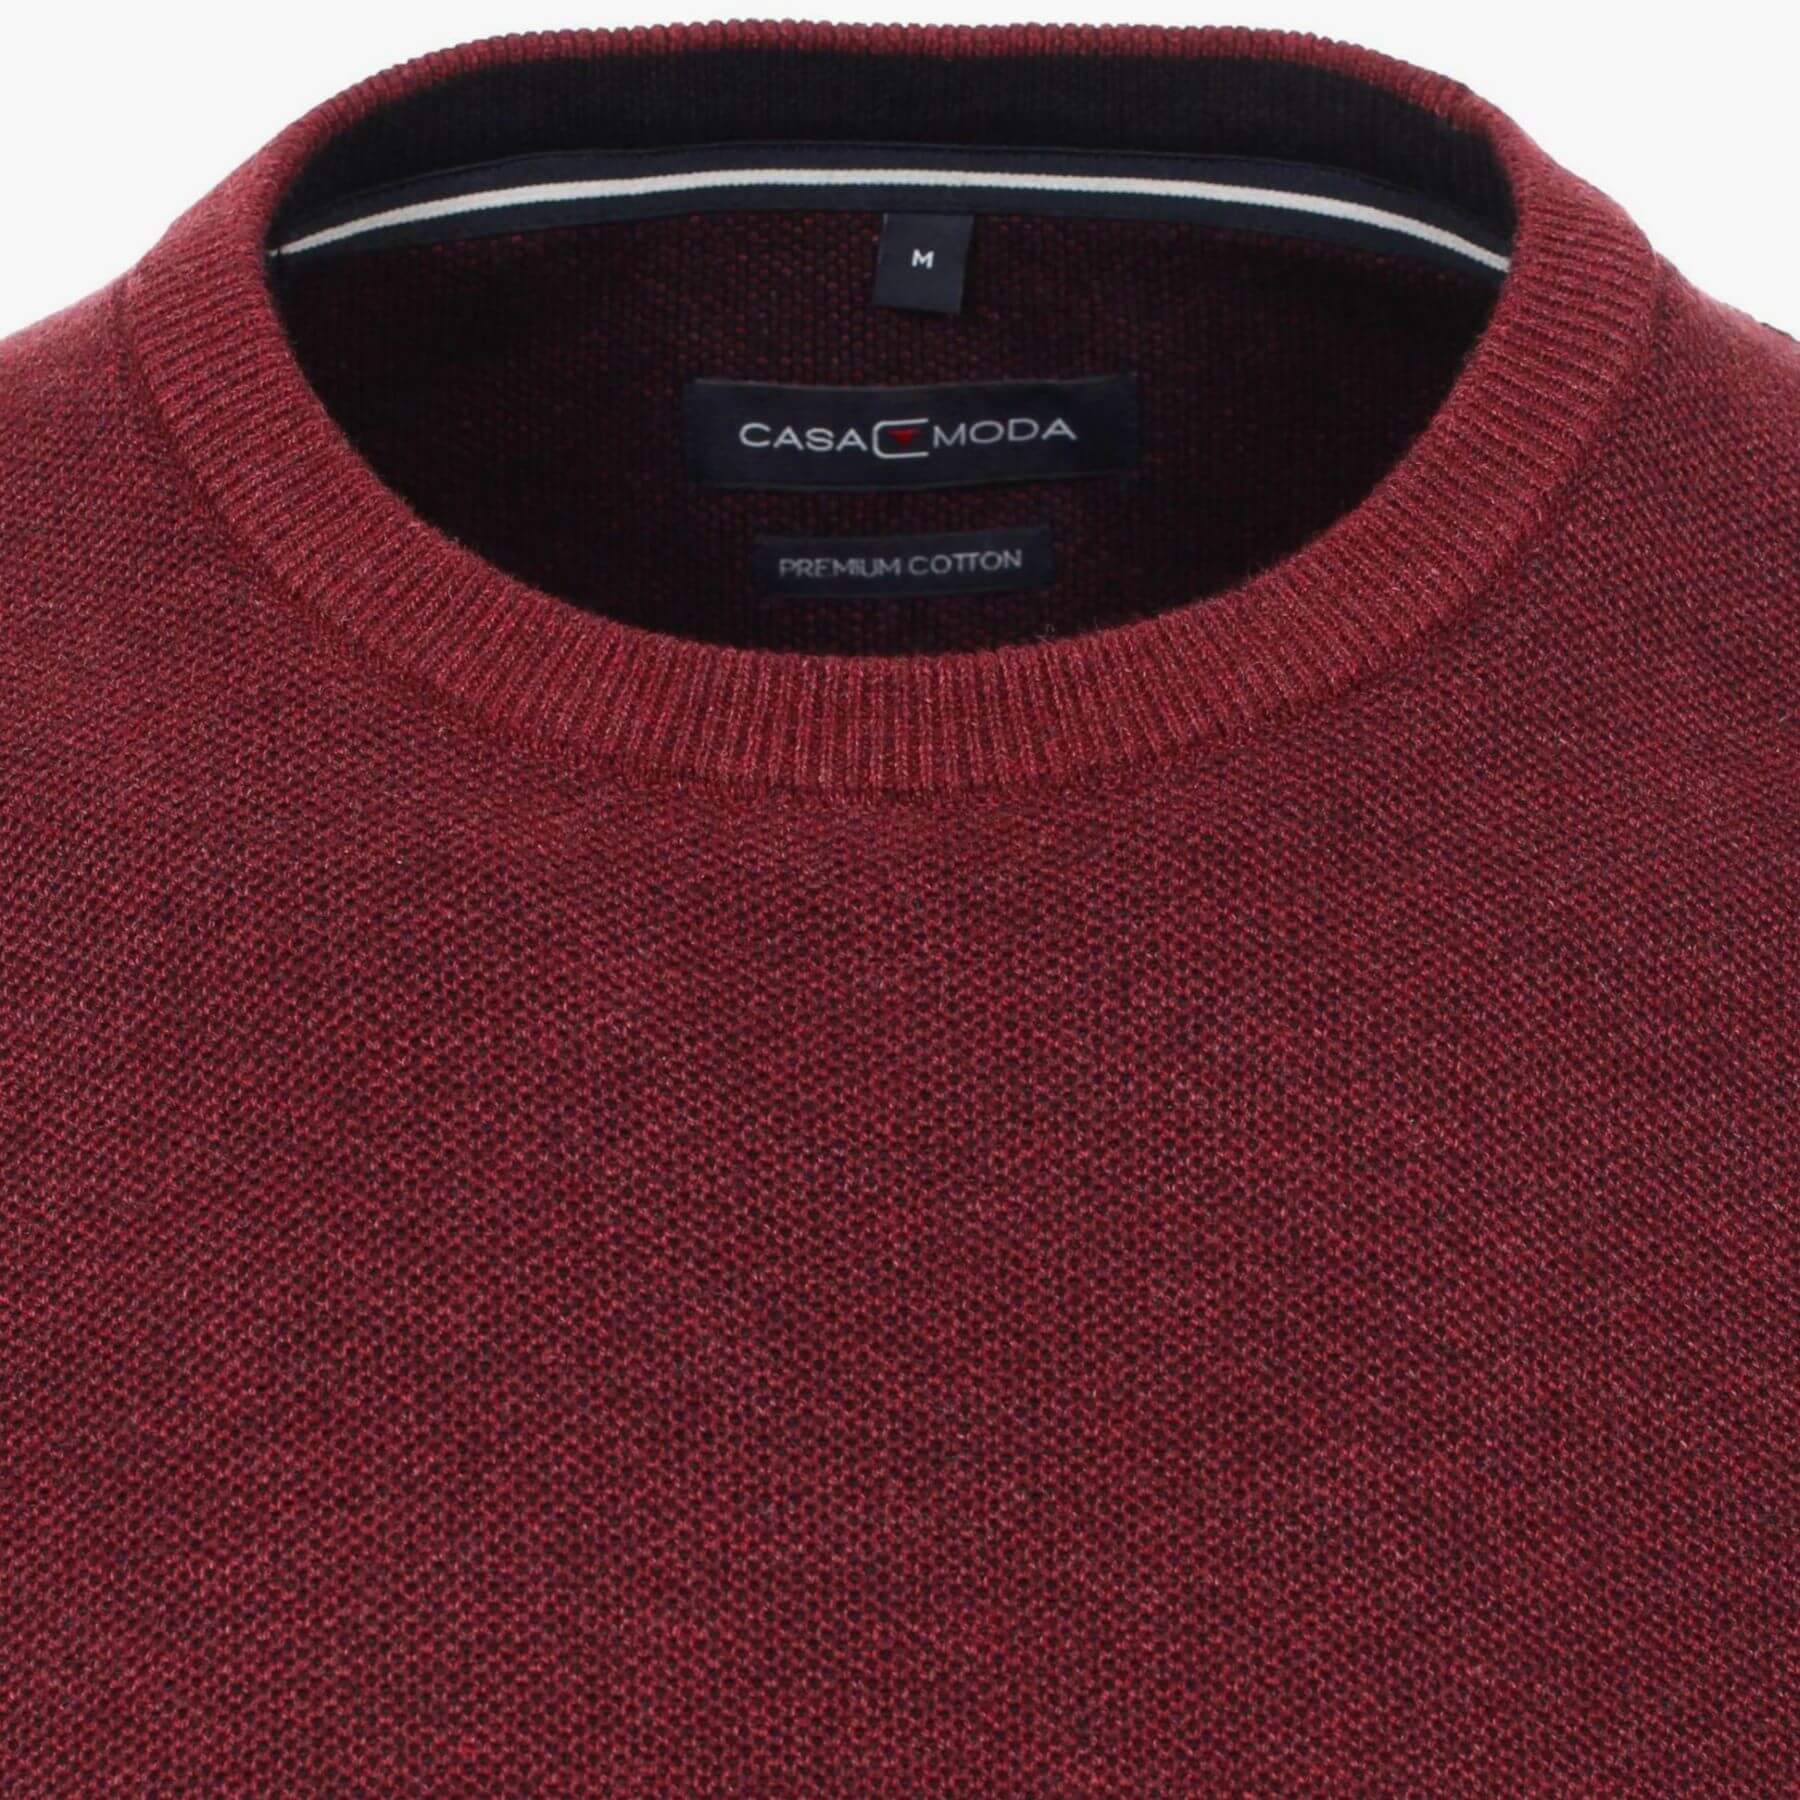 Пуловер мужской Casamoda 413705800-416 цвет Мерло